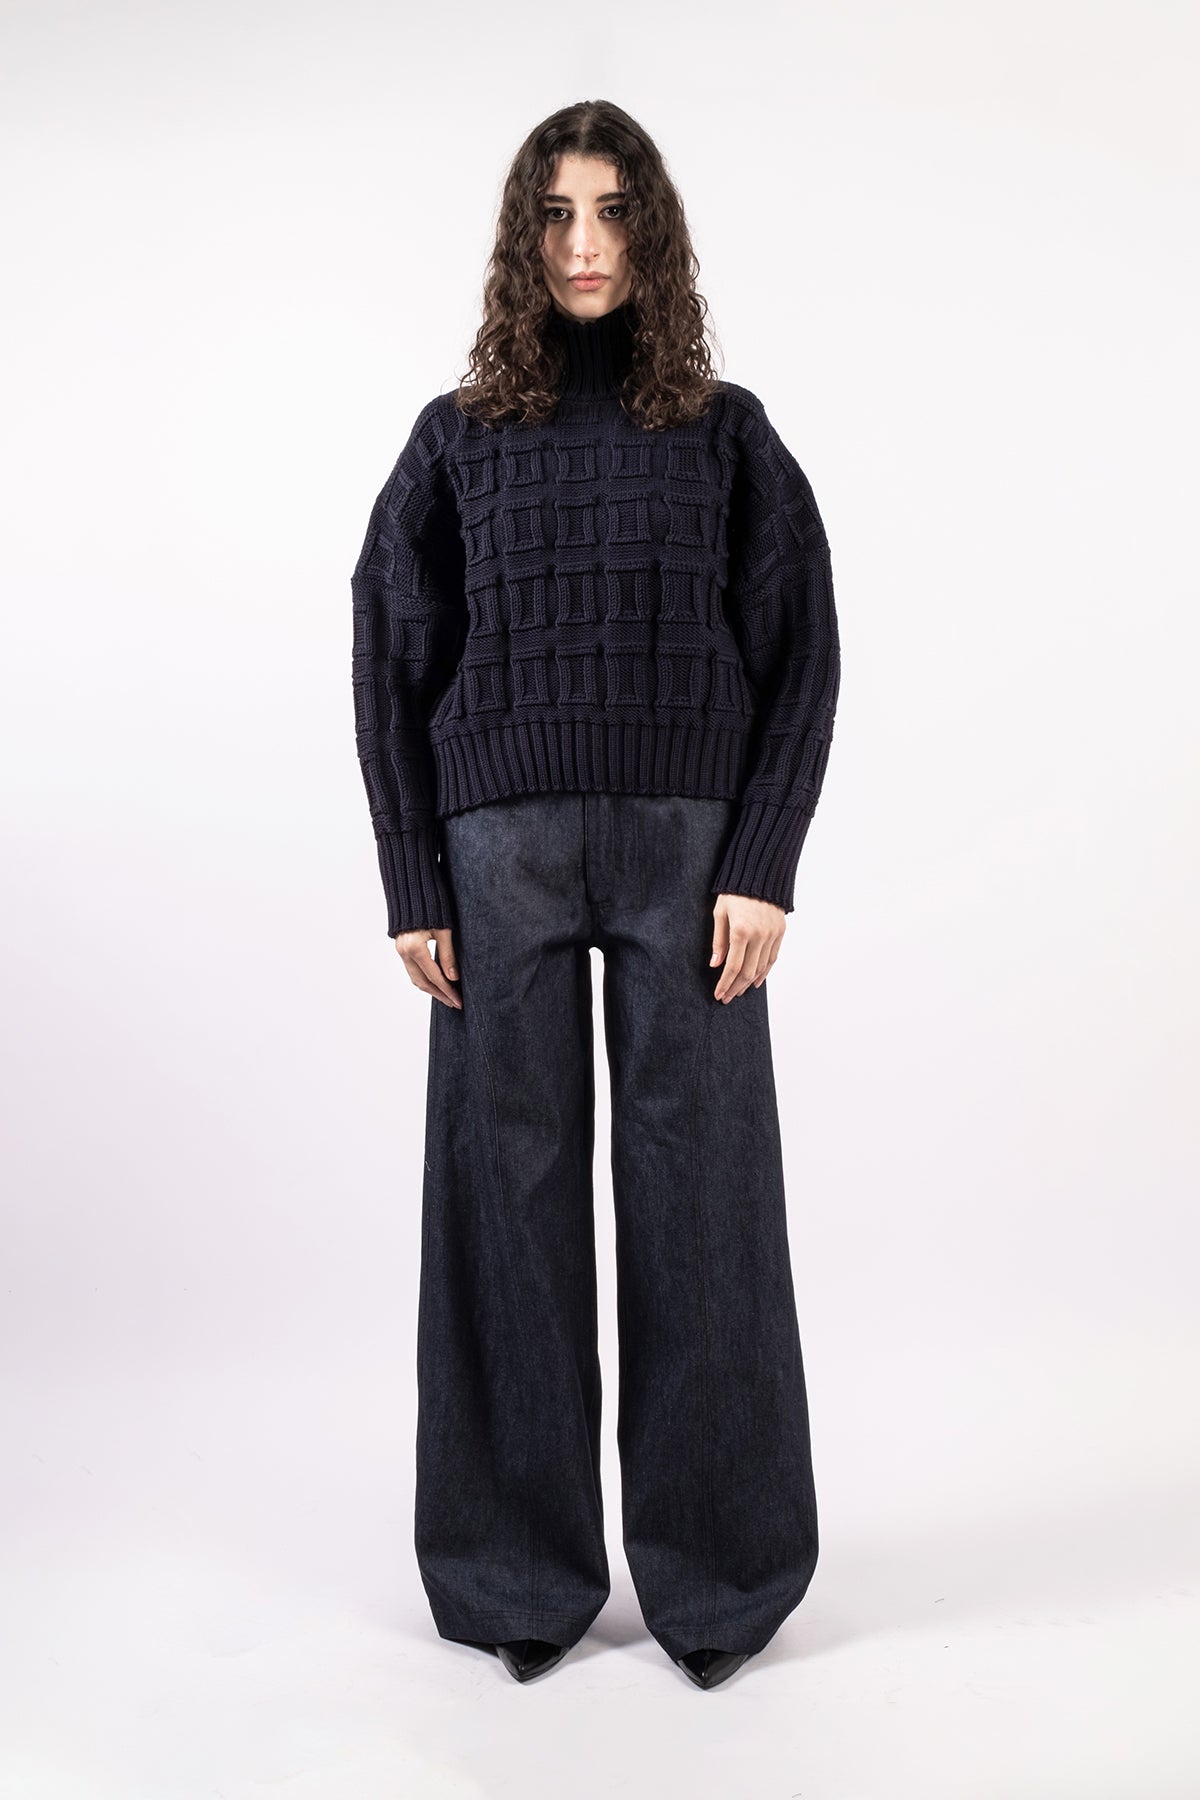 Merino wool jumper, short version